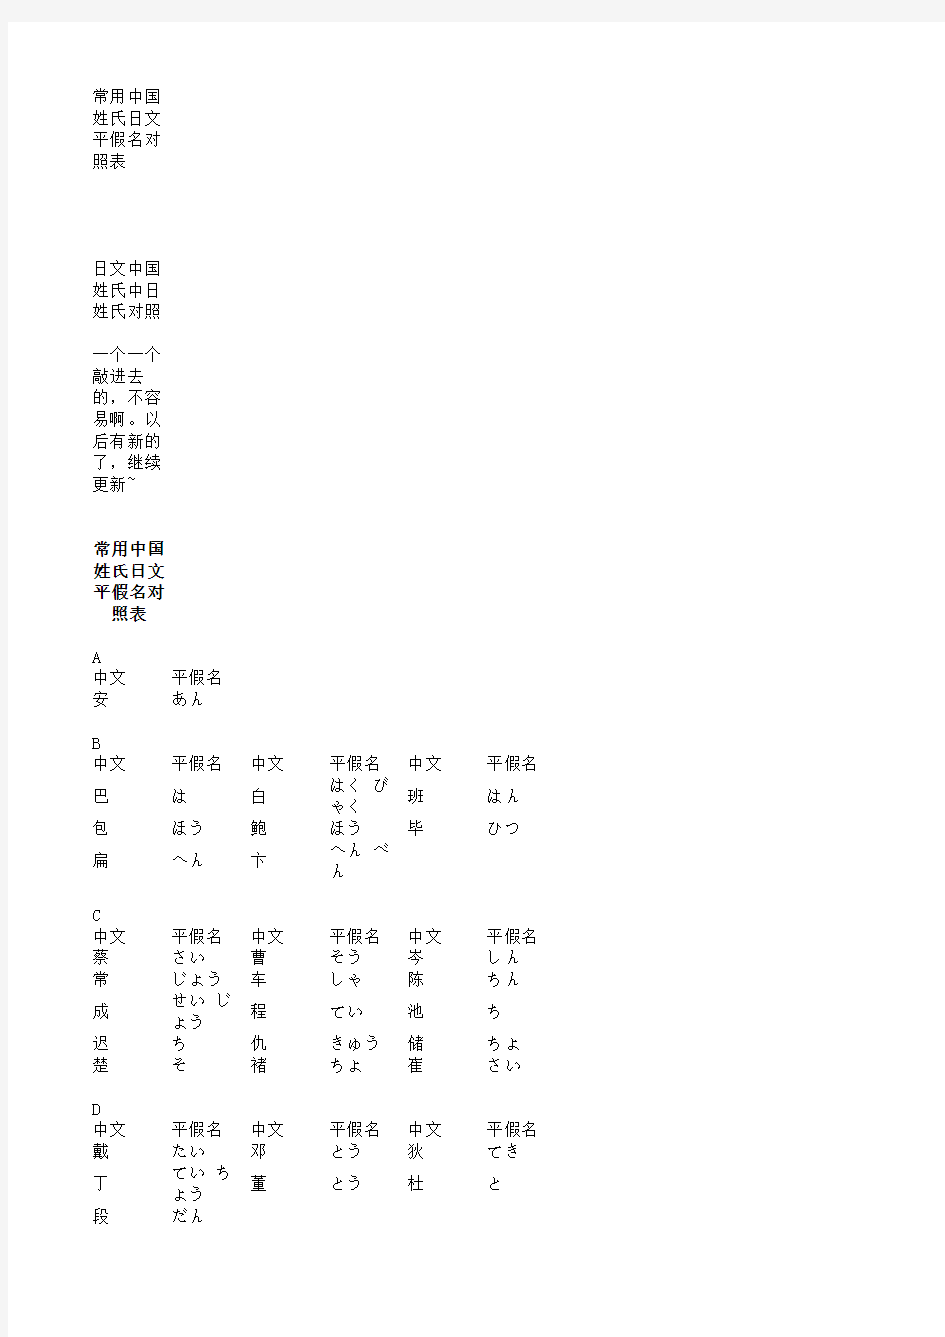 常用中国姓氏日文平假名对照表